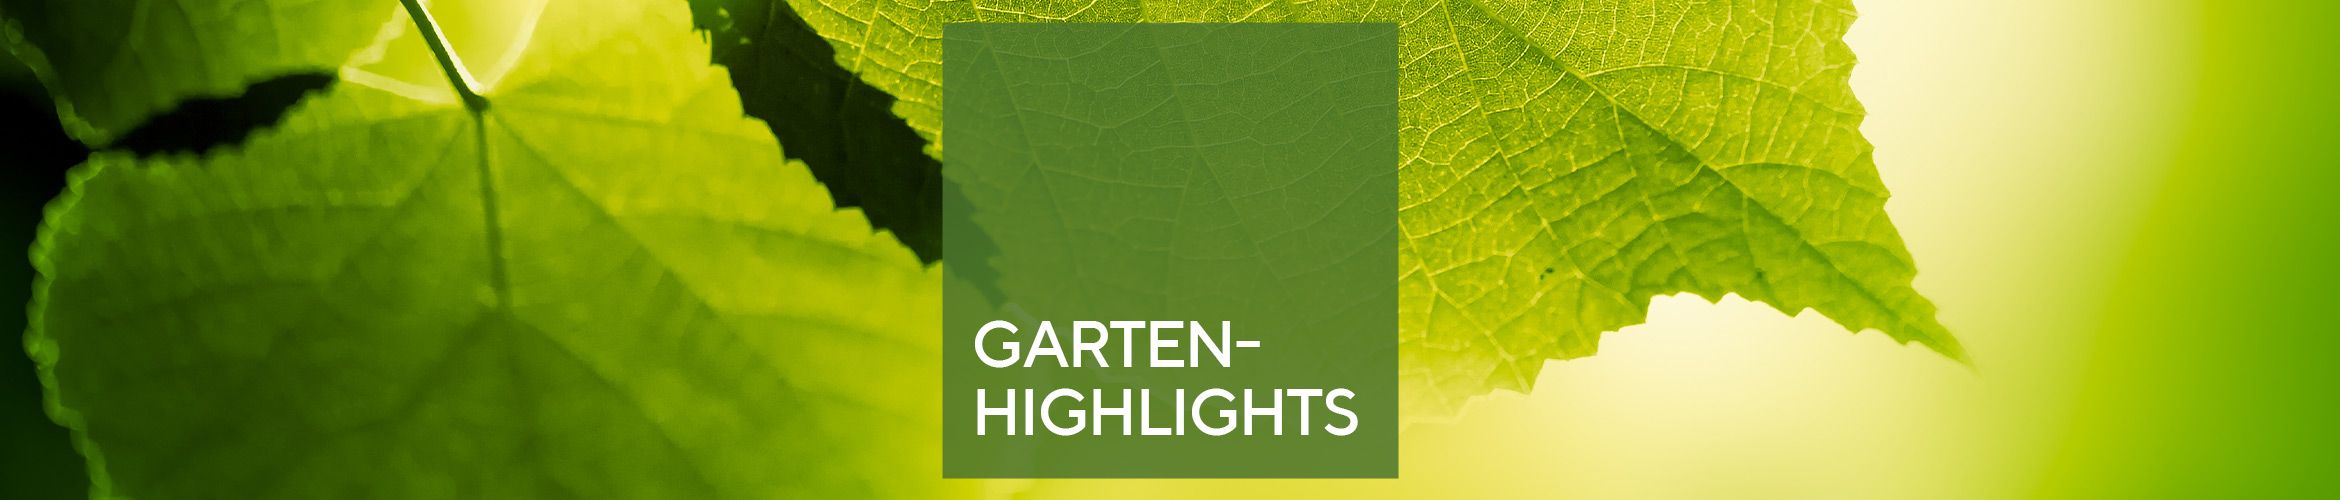 Garten-Highlights